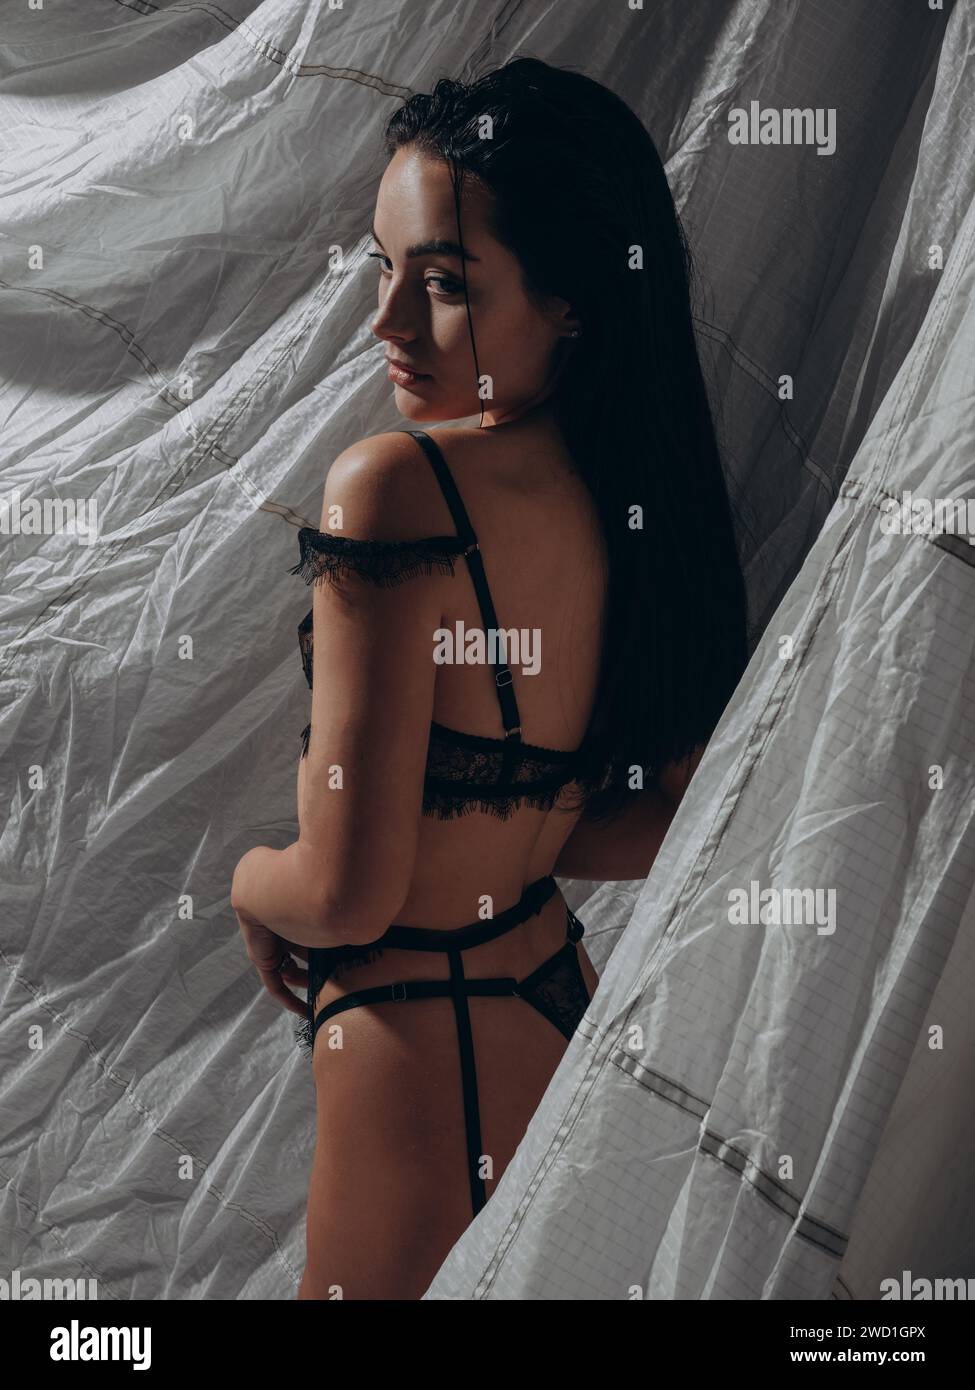 Junge sexy verführerische Frau posiert in Spitzen-schwarzen Dessous und Strumpfgürtel in dunklem Studio auf grauem Hintergrund. BDSM-Stil. Nahaufnahme. Rückansicht. Stockfoto